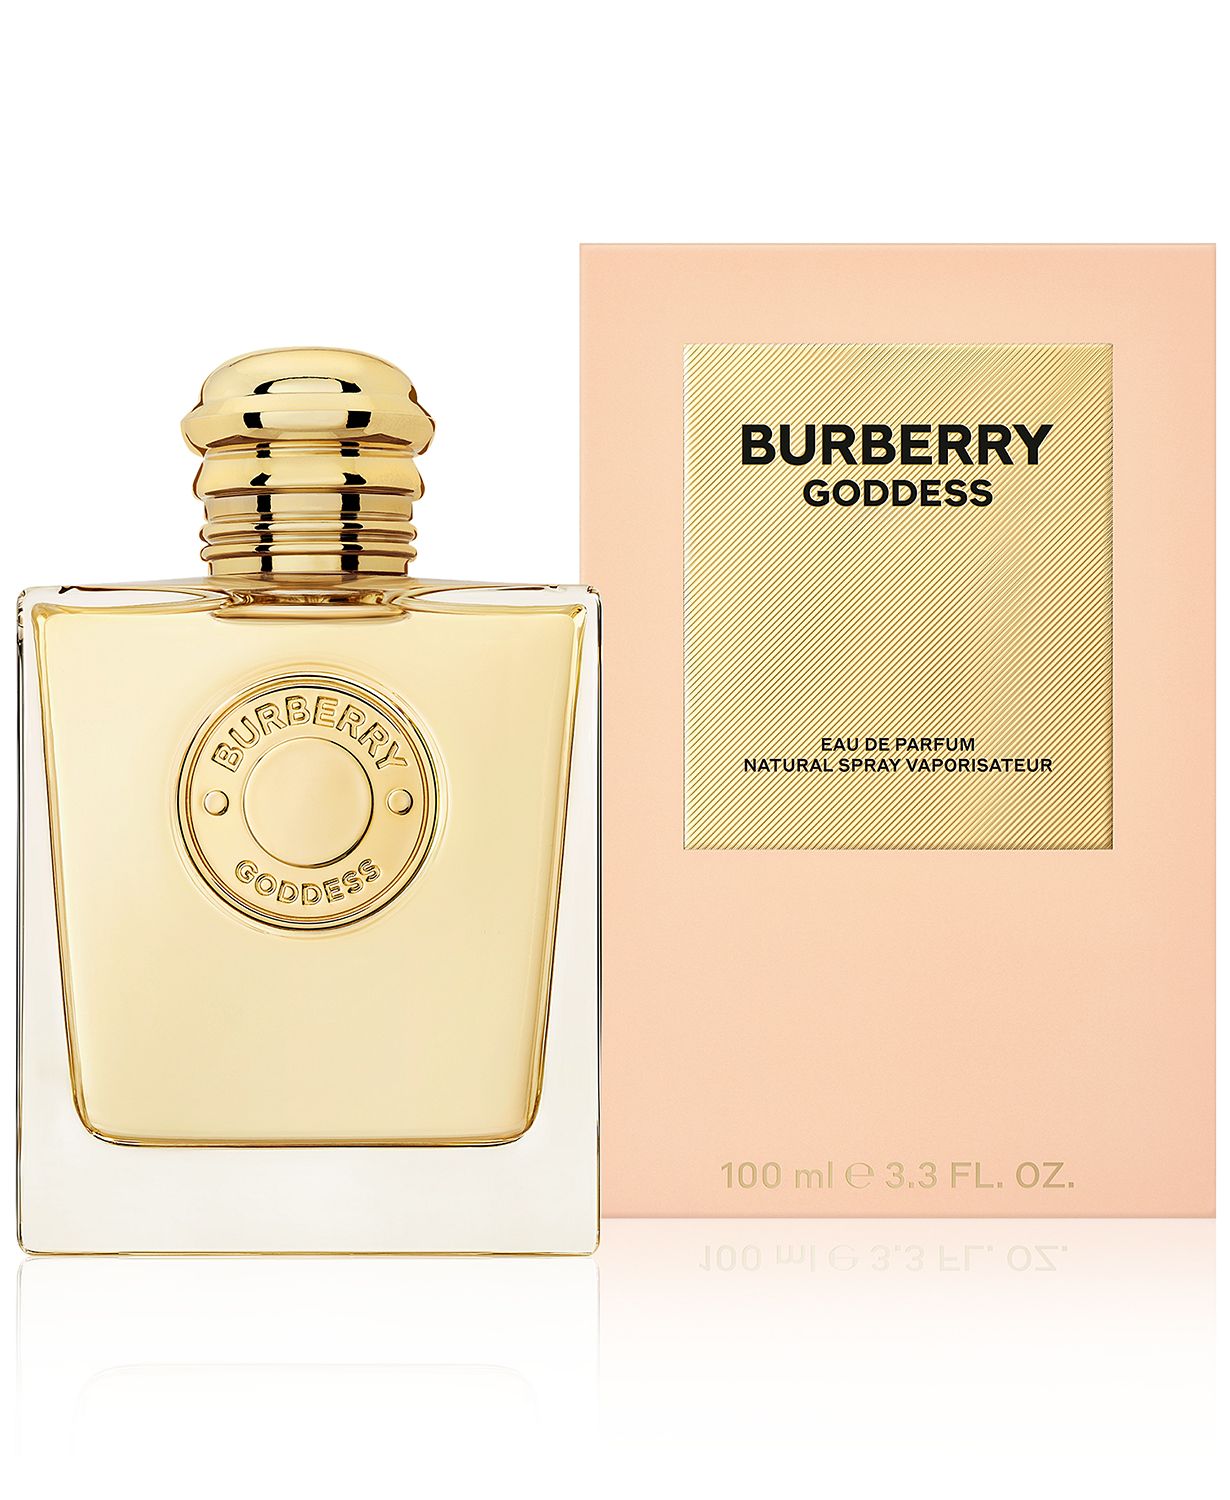 Burberry Goddess Eau de Parfum, 3.3 oz.